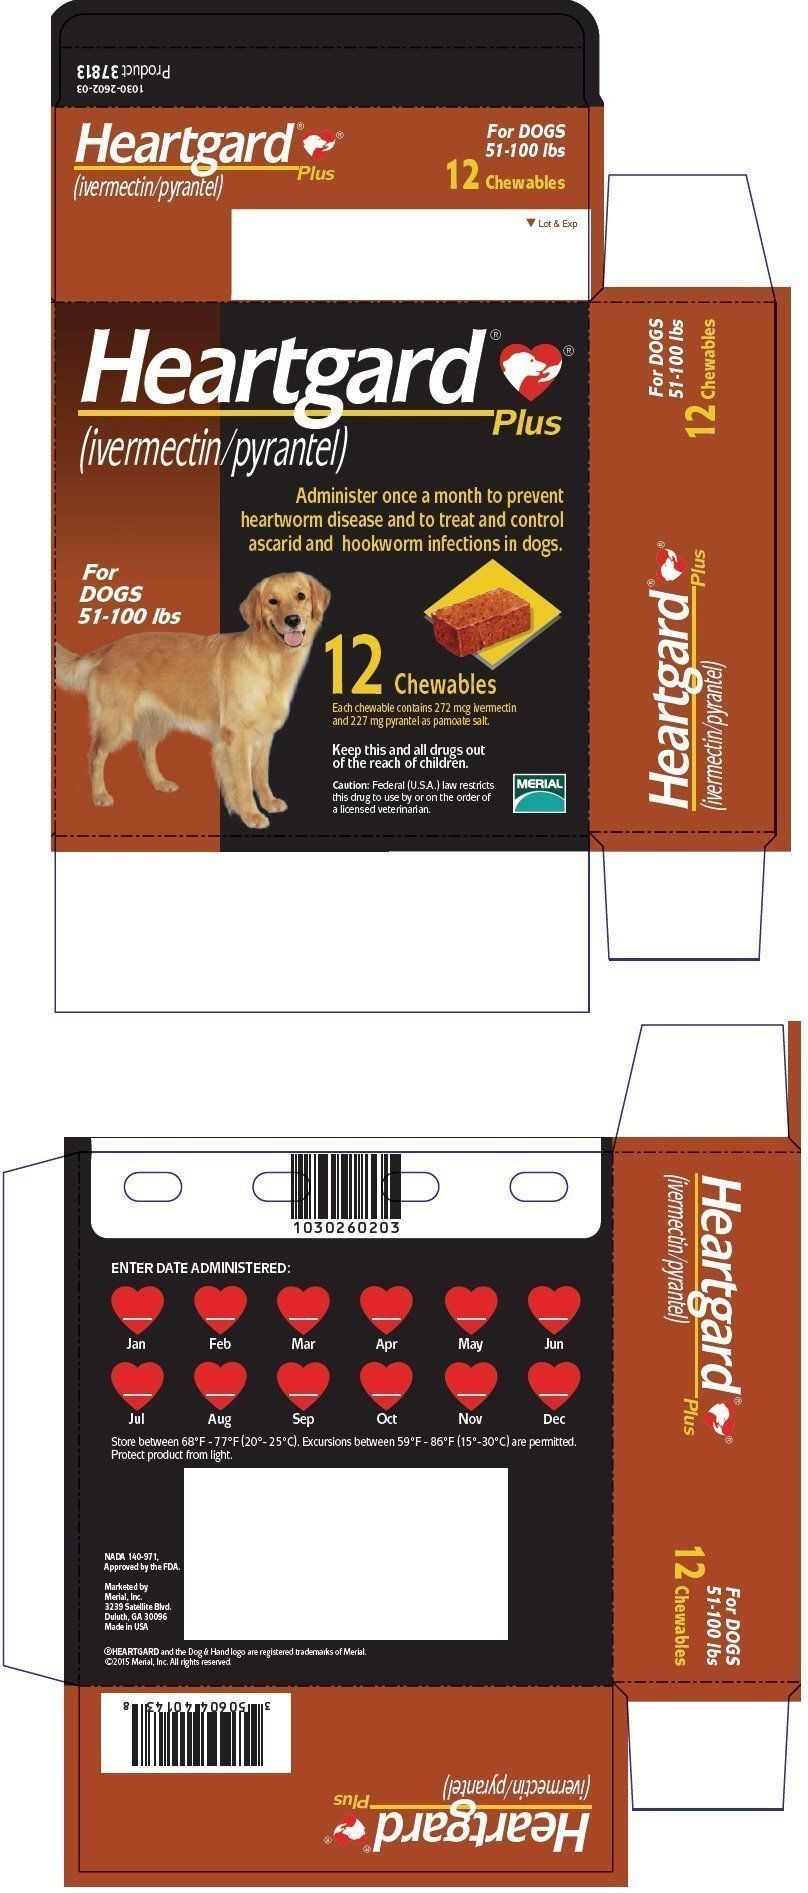 PRINCIPAL DISPLAY PANEL - 12 Tablet Carton (For Dogs 51-100 lbs)